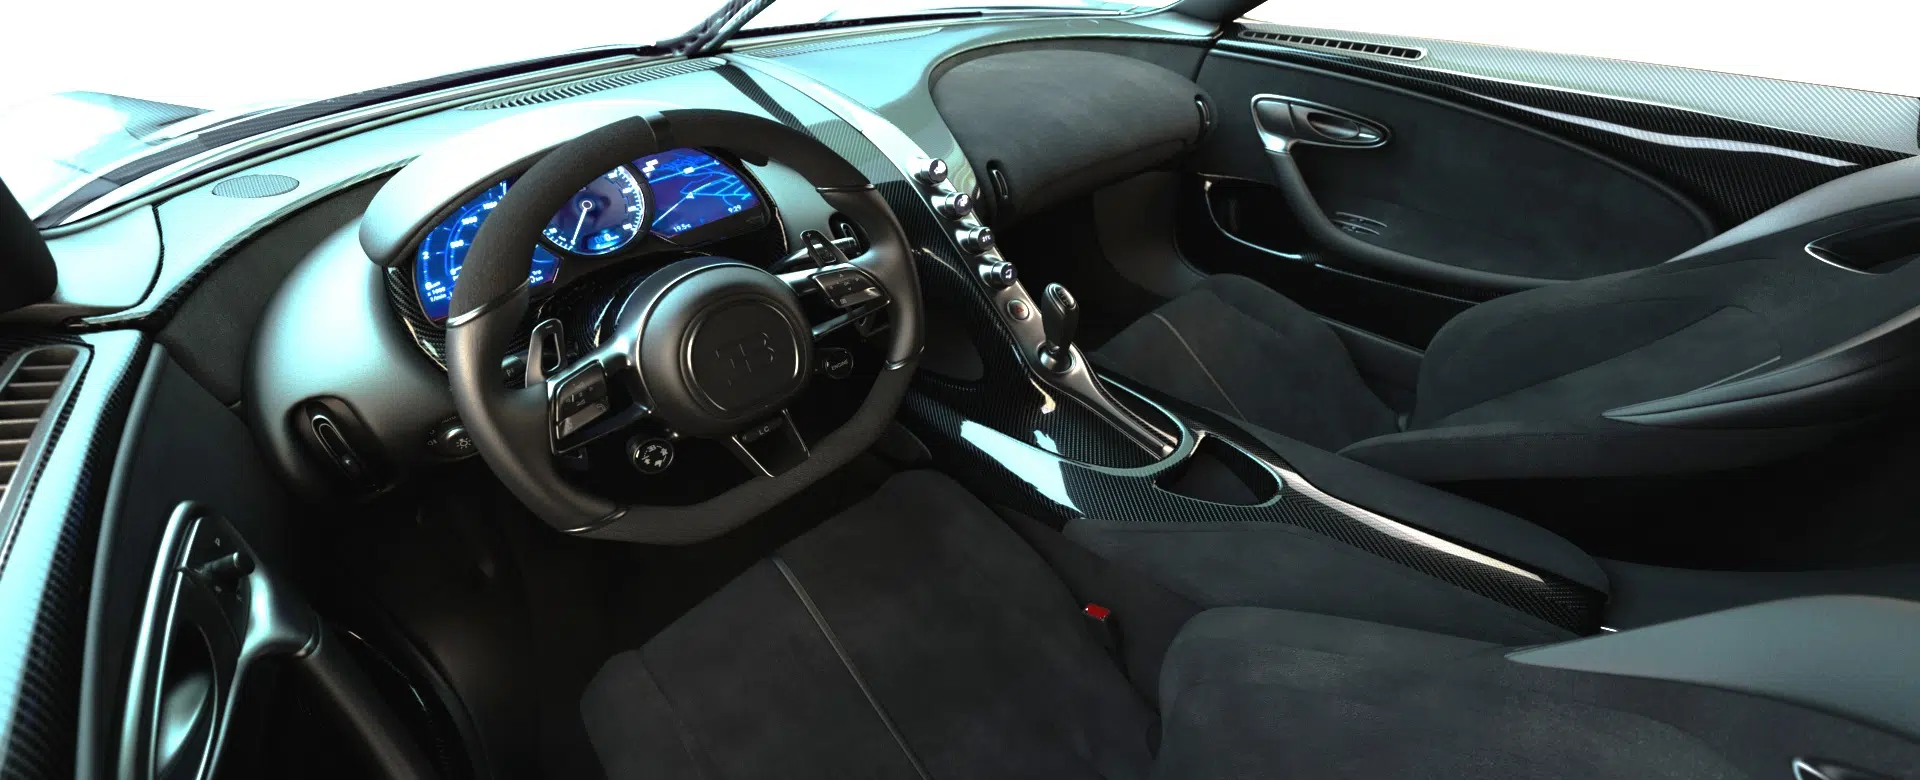 Bugatti La Voiture Noire 9